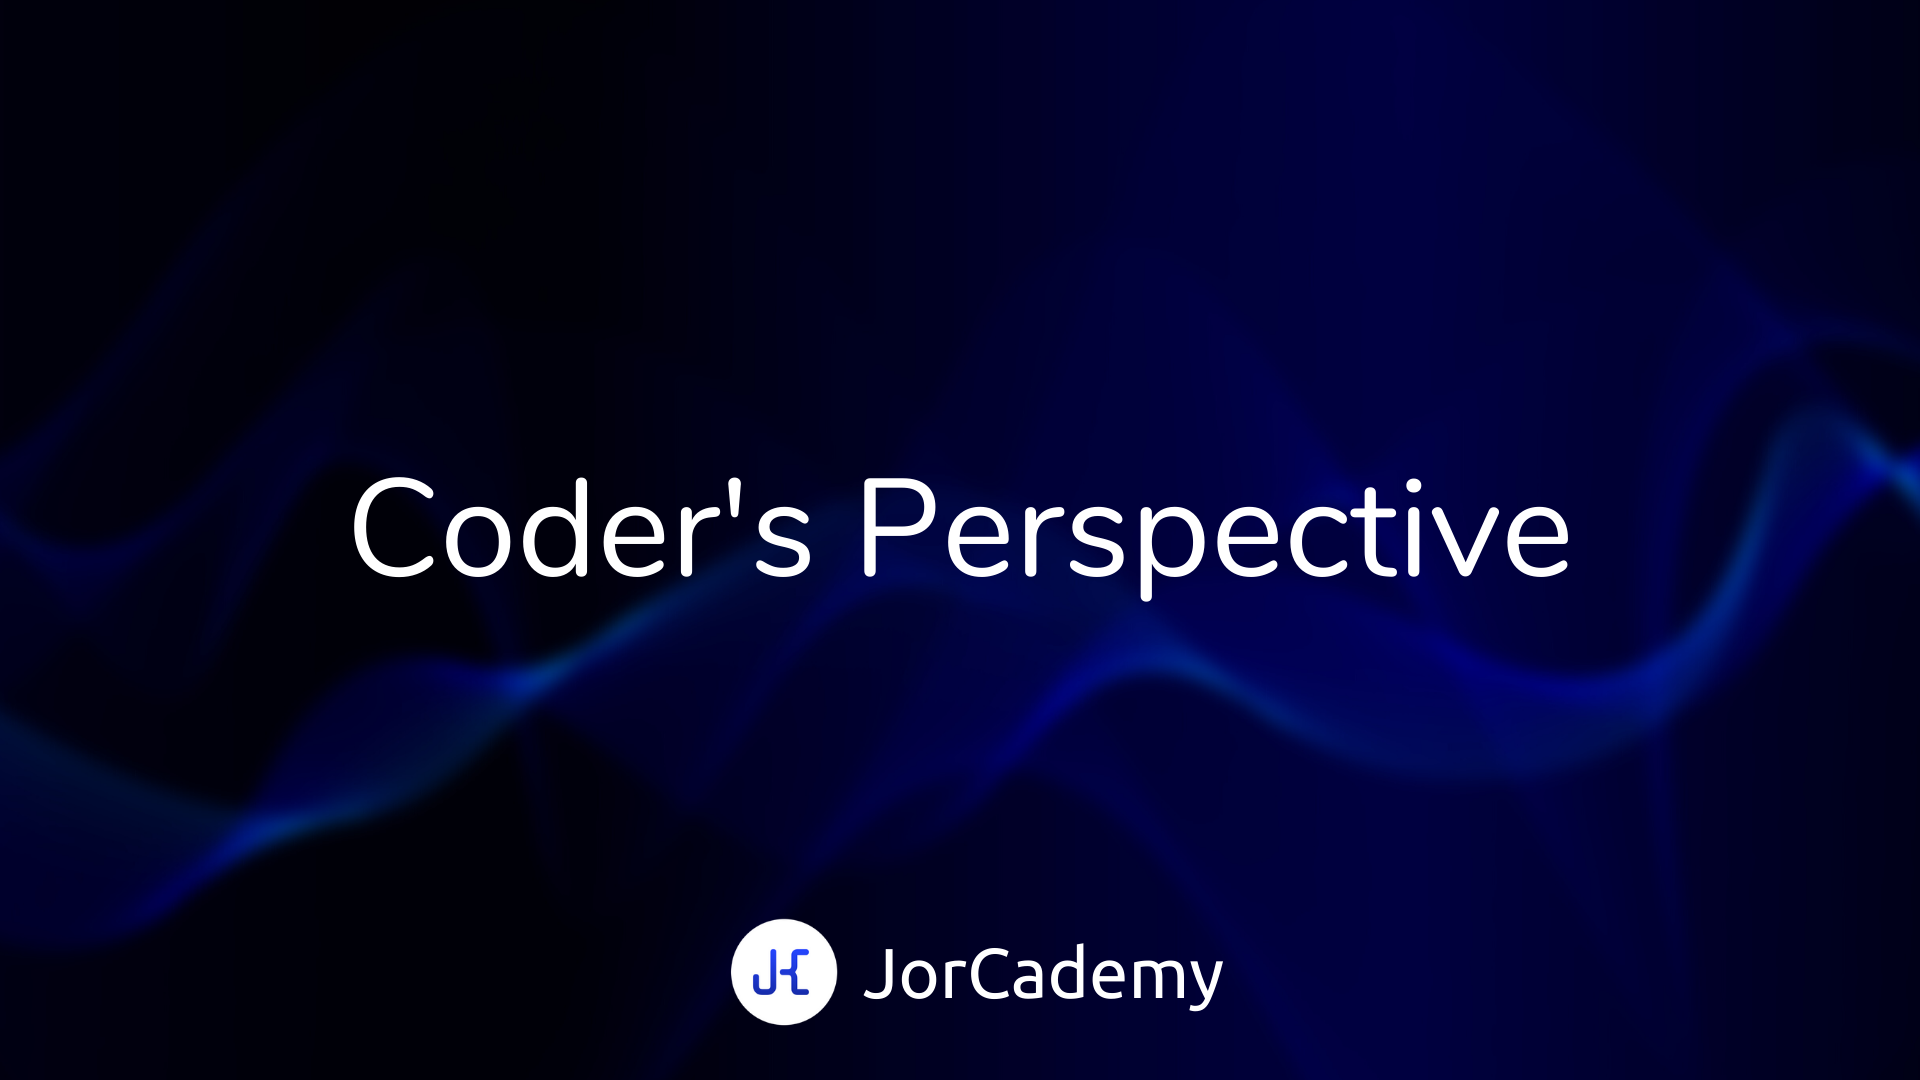 De introductie van een nieuwe serie: Coder's Perspective